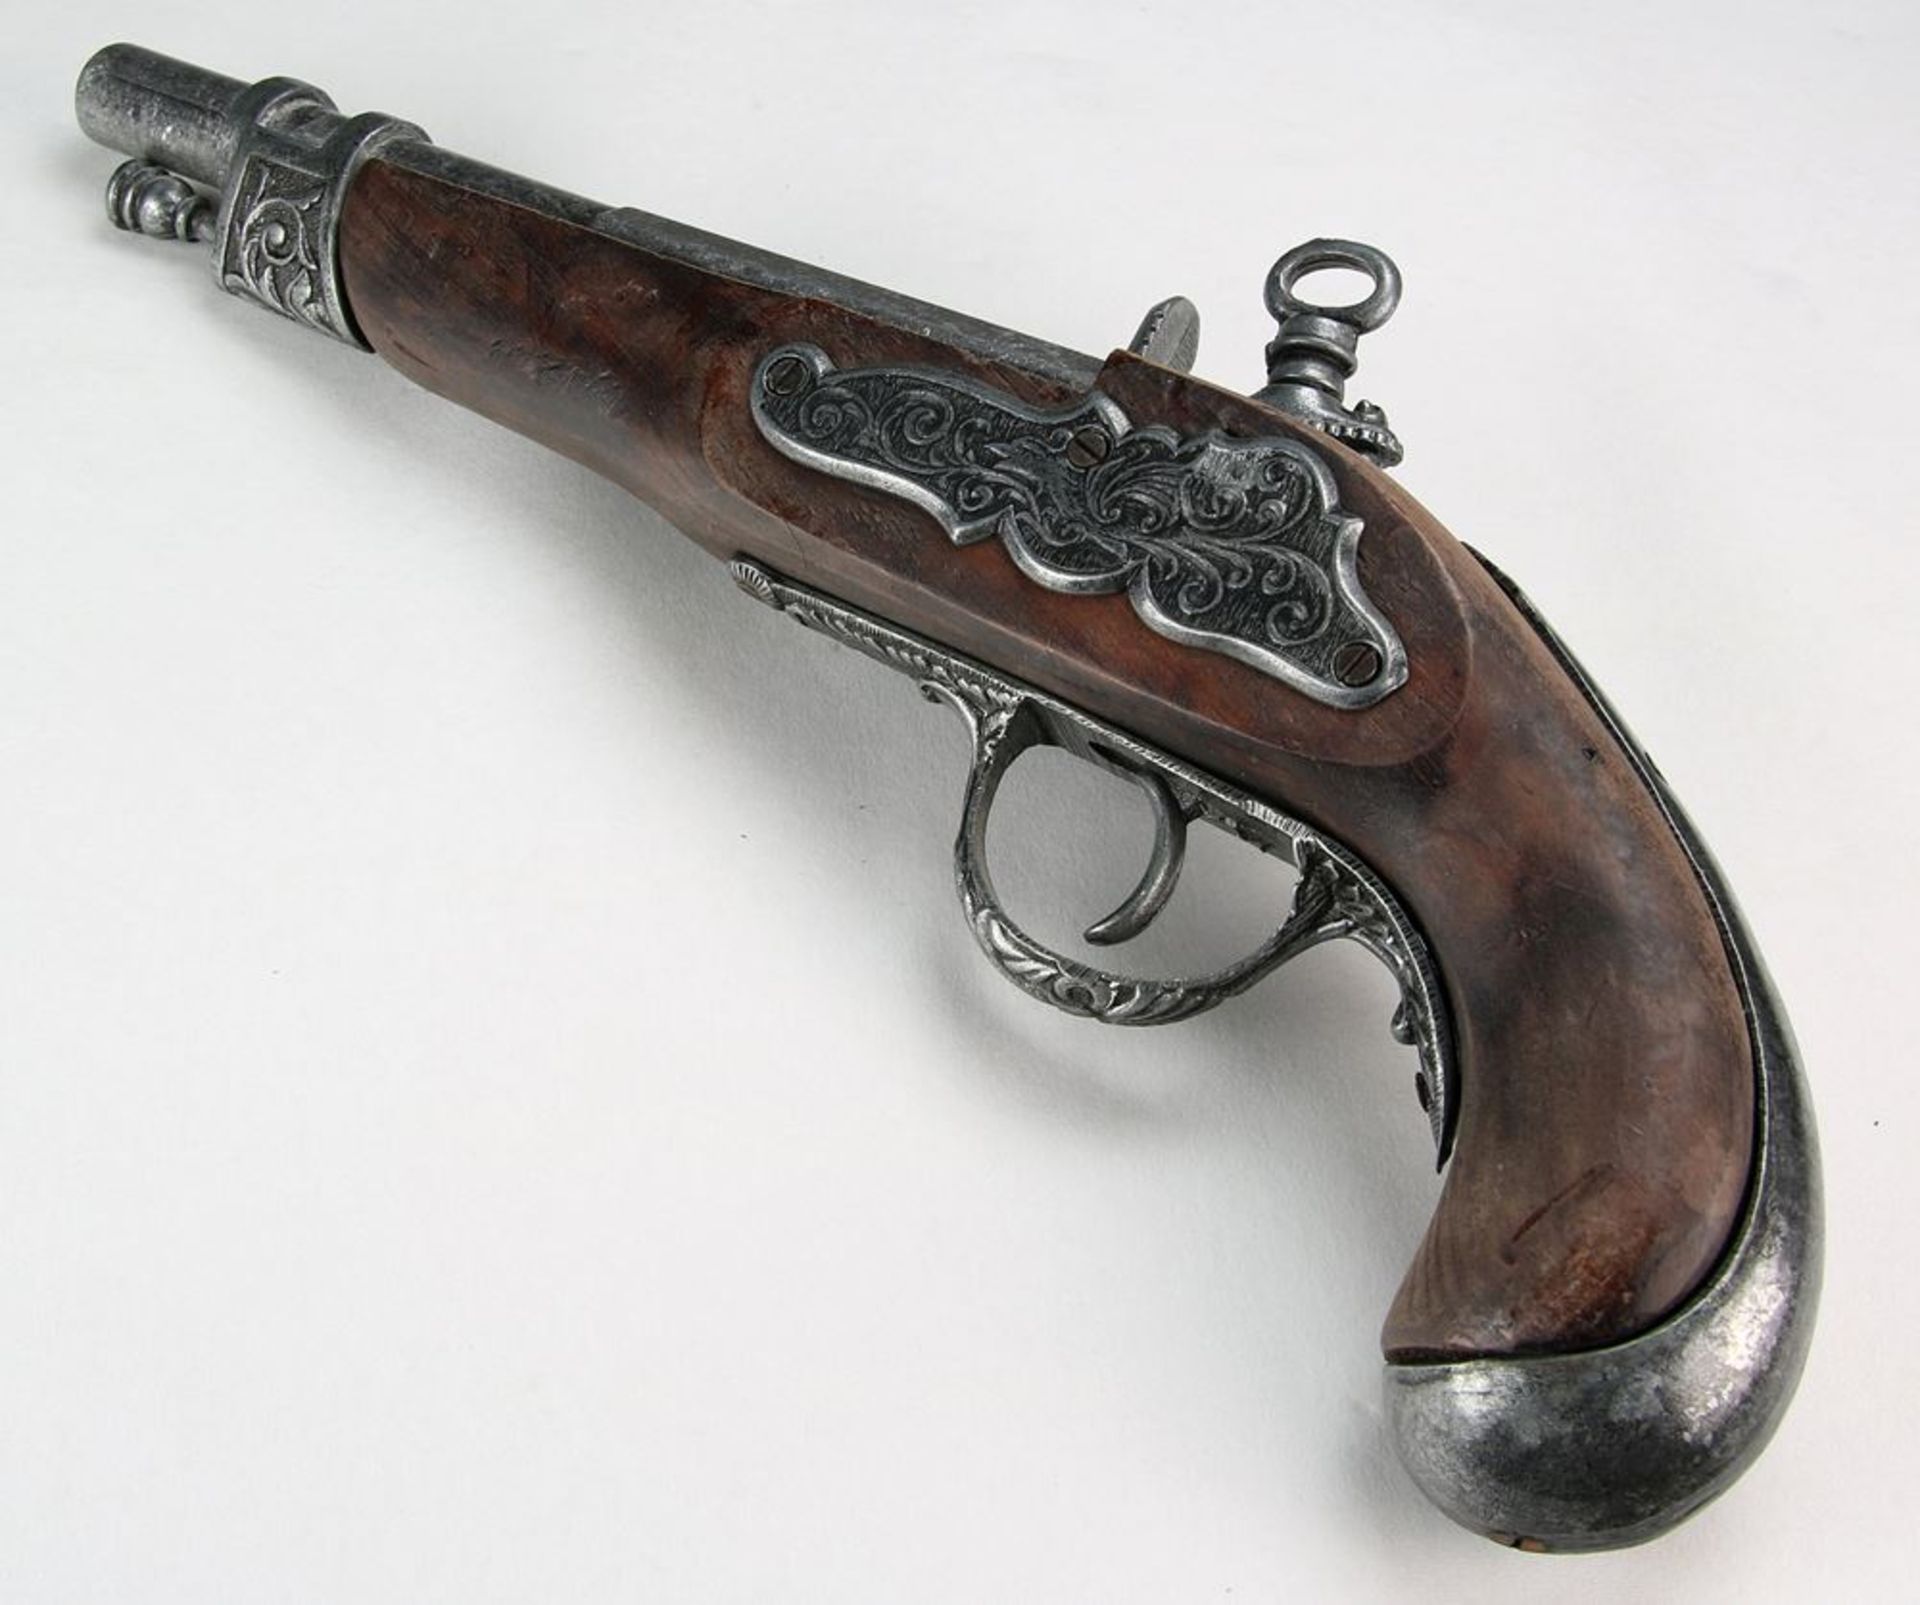 Steinschloßpistolein der Art einer barocken Waffe. Länge ca. 32 cm, Gewicht ca. 6,8 Kilogramm. - Bild 2 aus 5